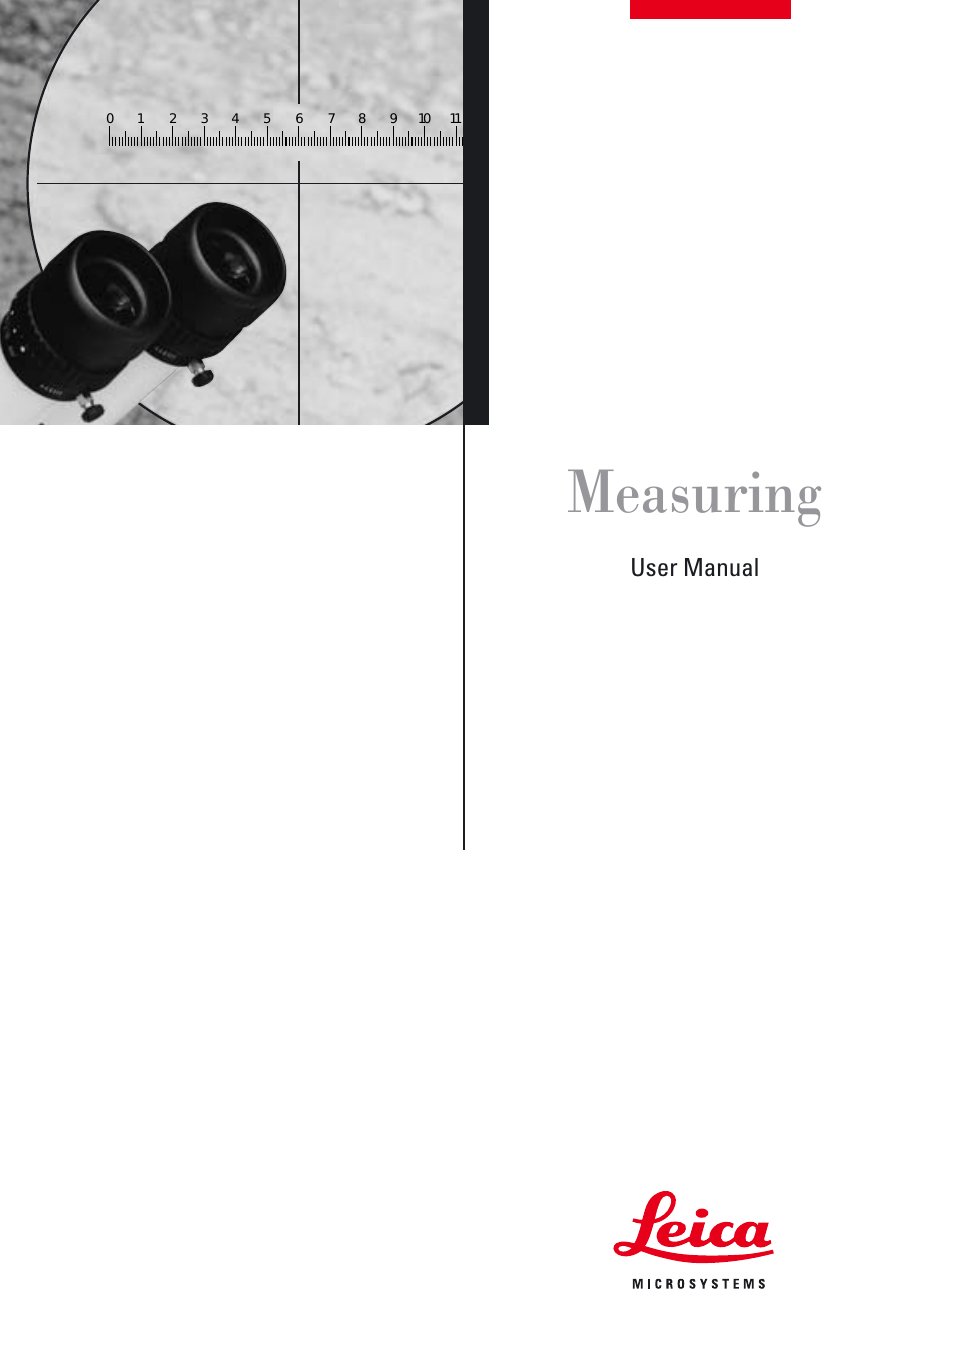 M125 Measuring